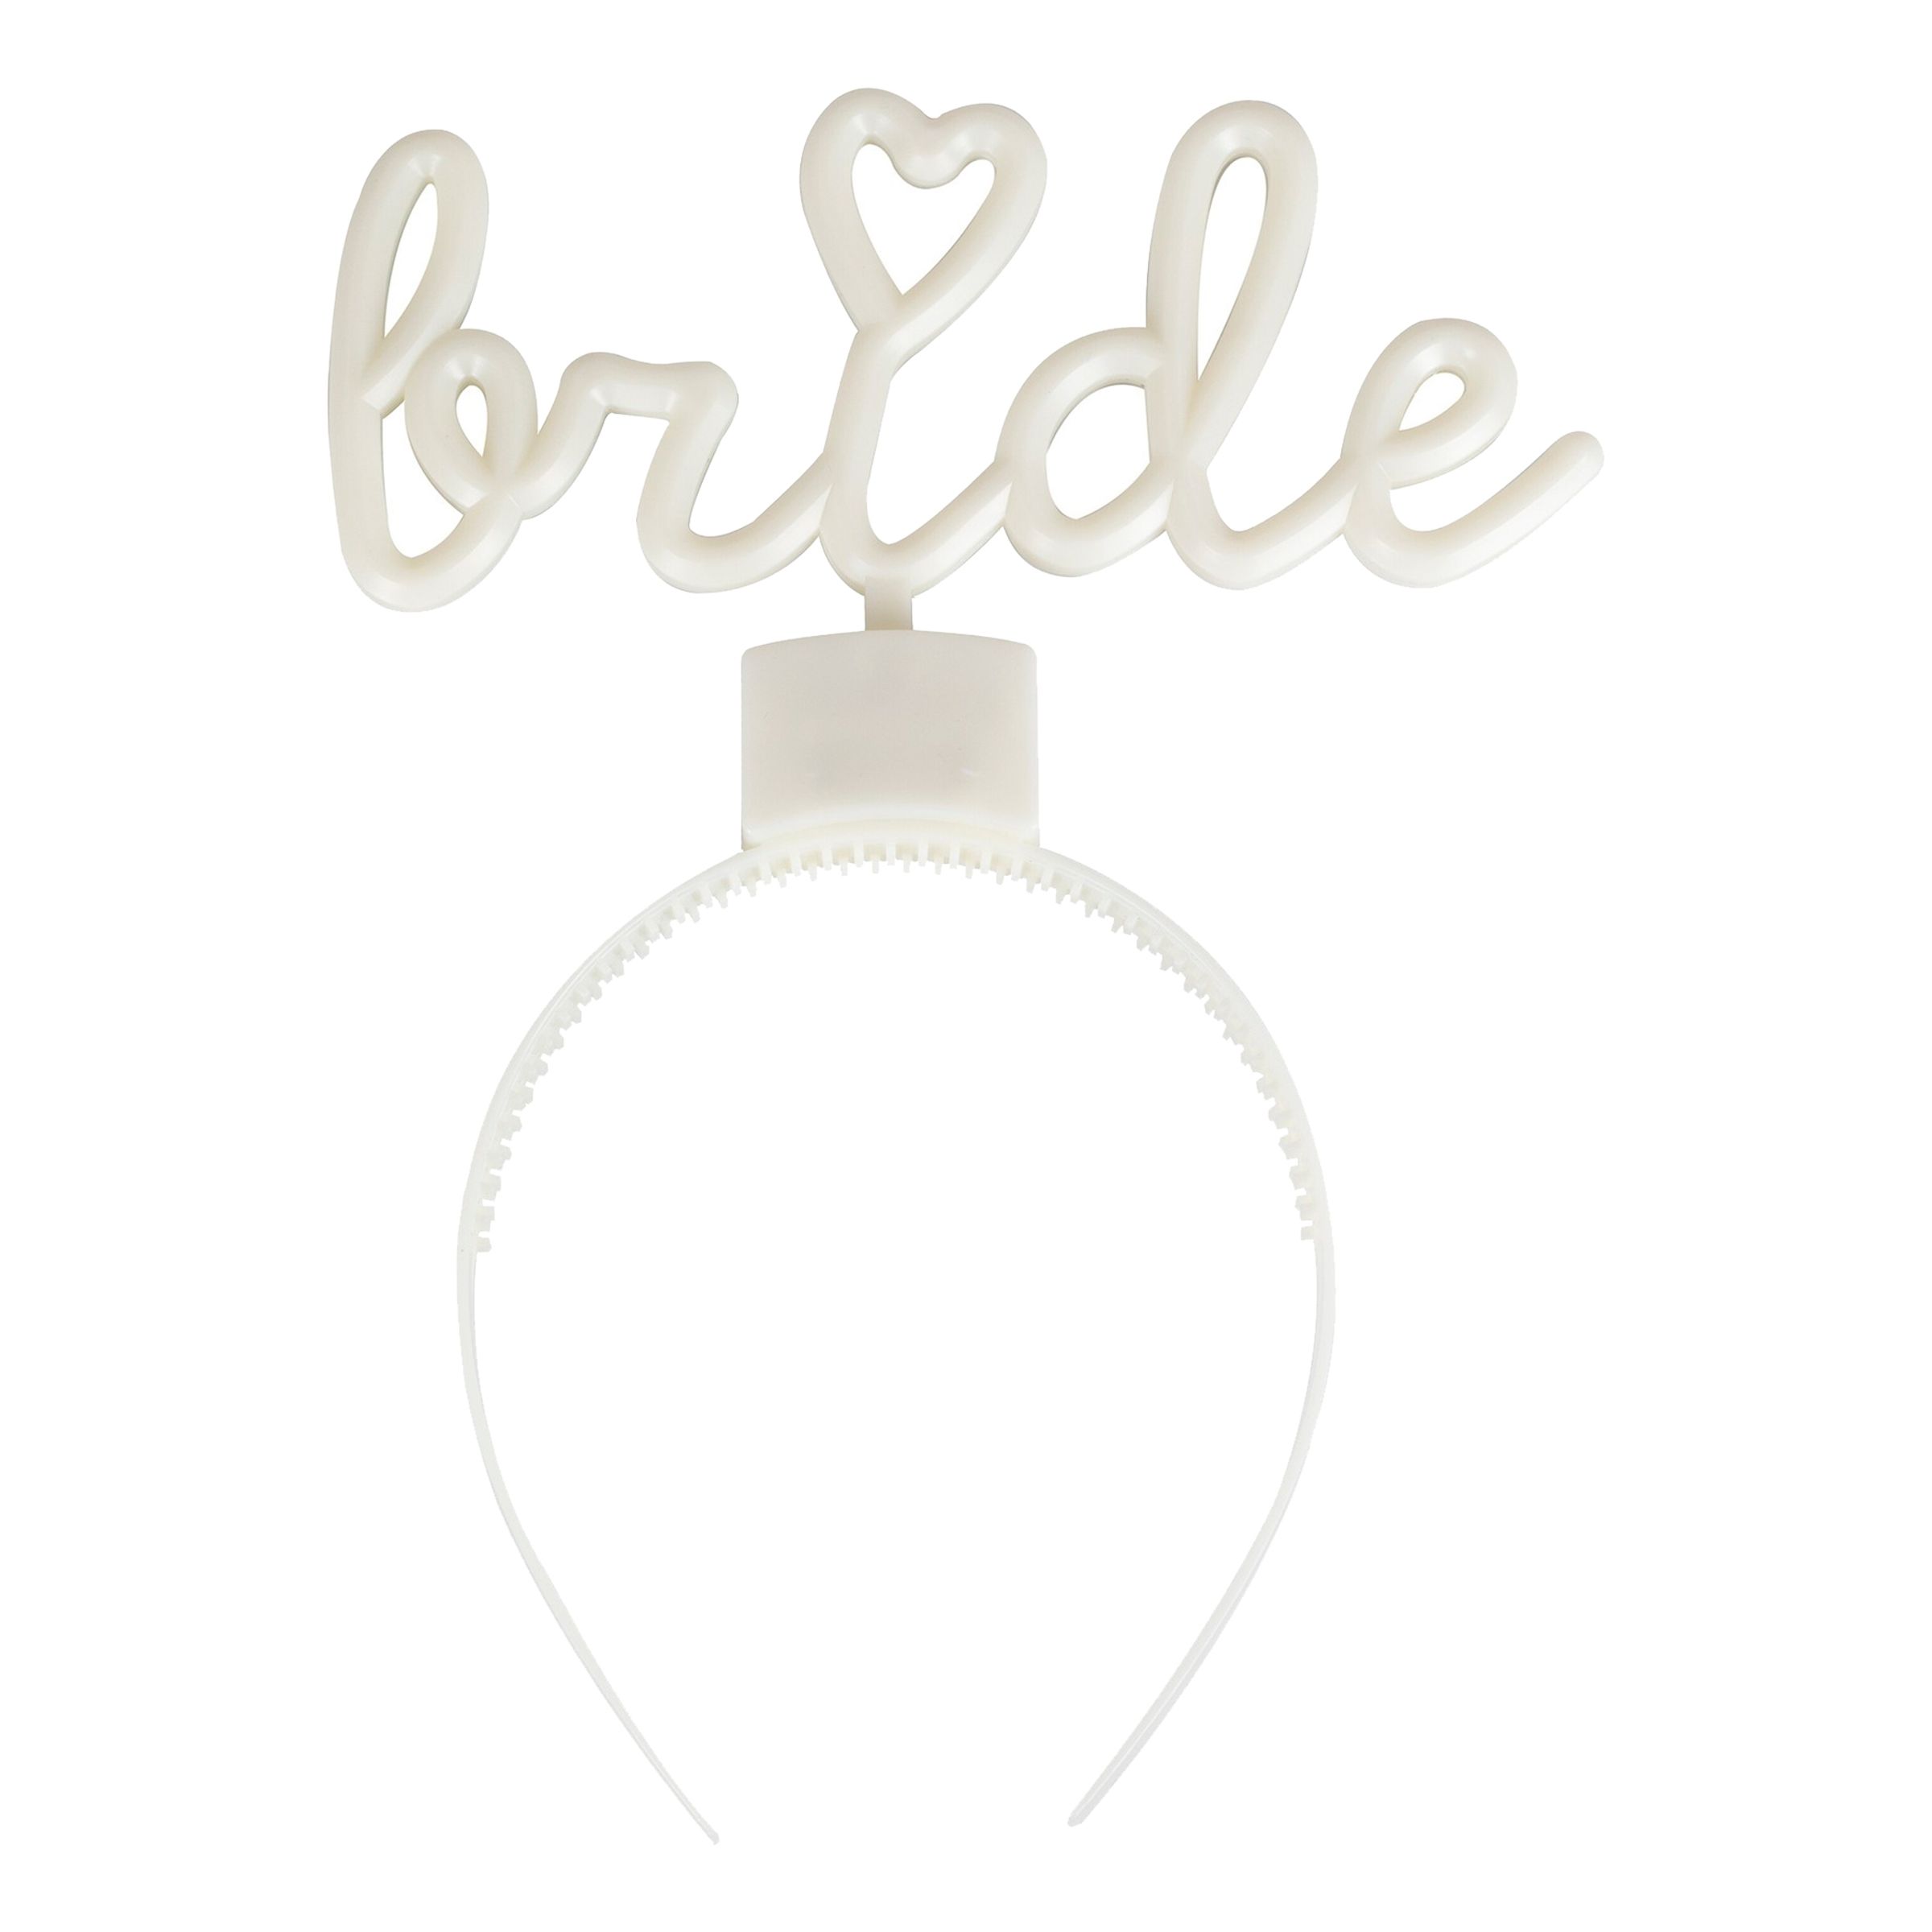 LED Diadem Bride